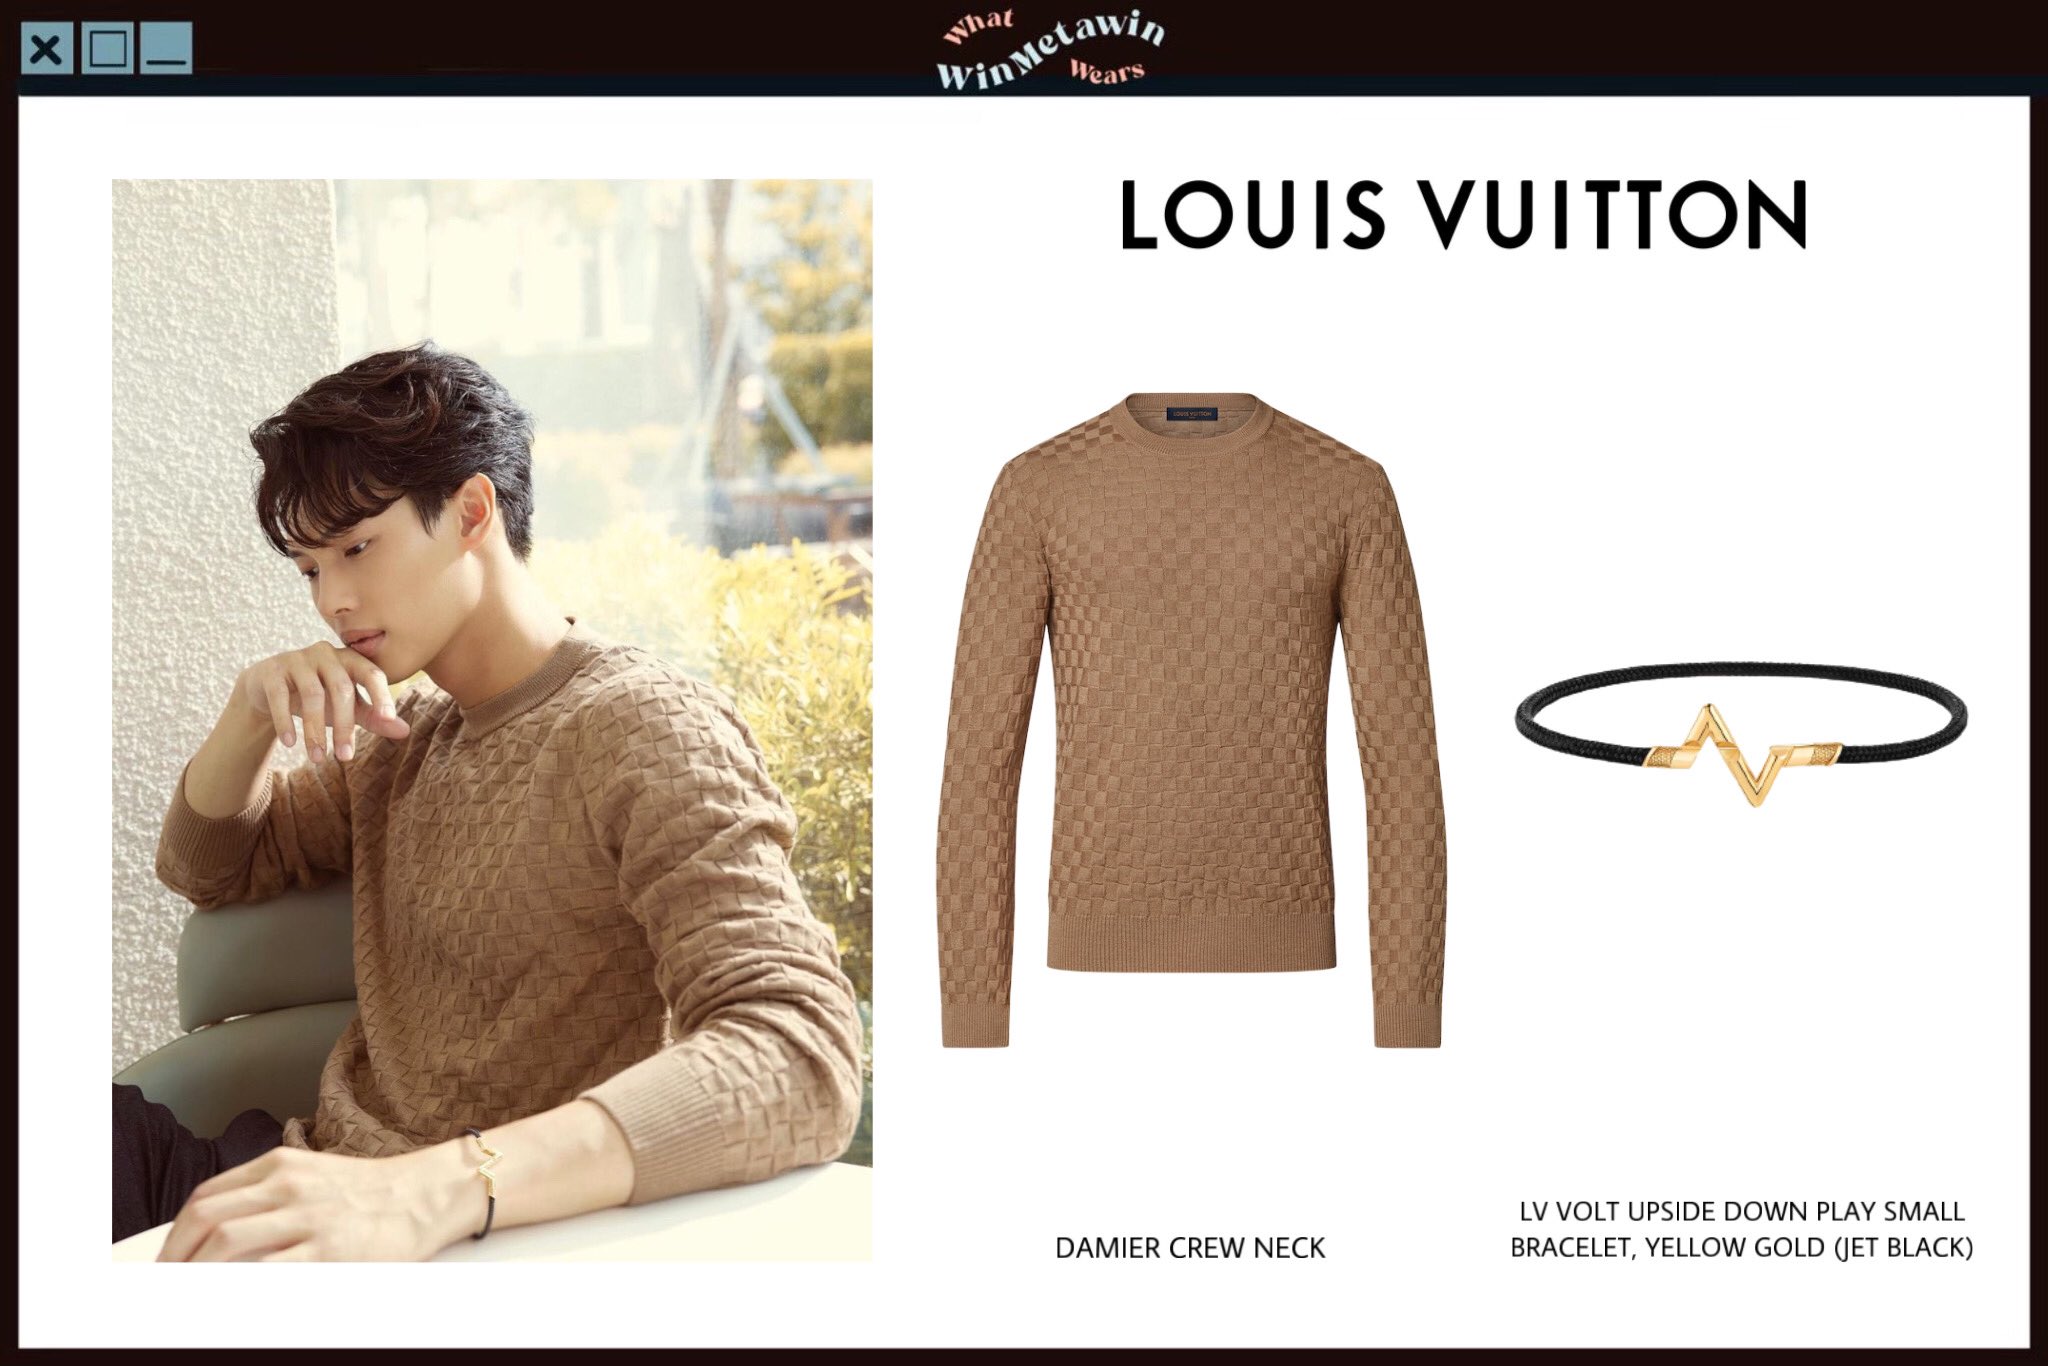 Louis Vuitton LV Volt Upside Down Bracelet, Yellow Gold Gold. Size L